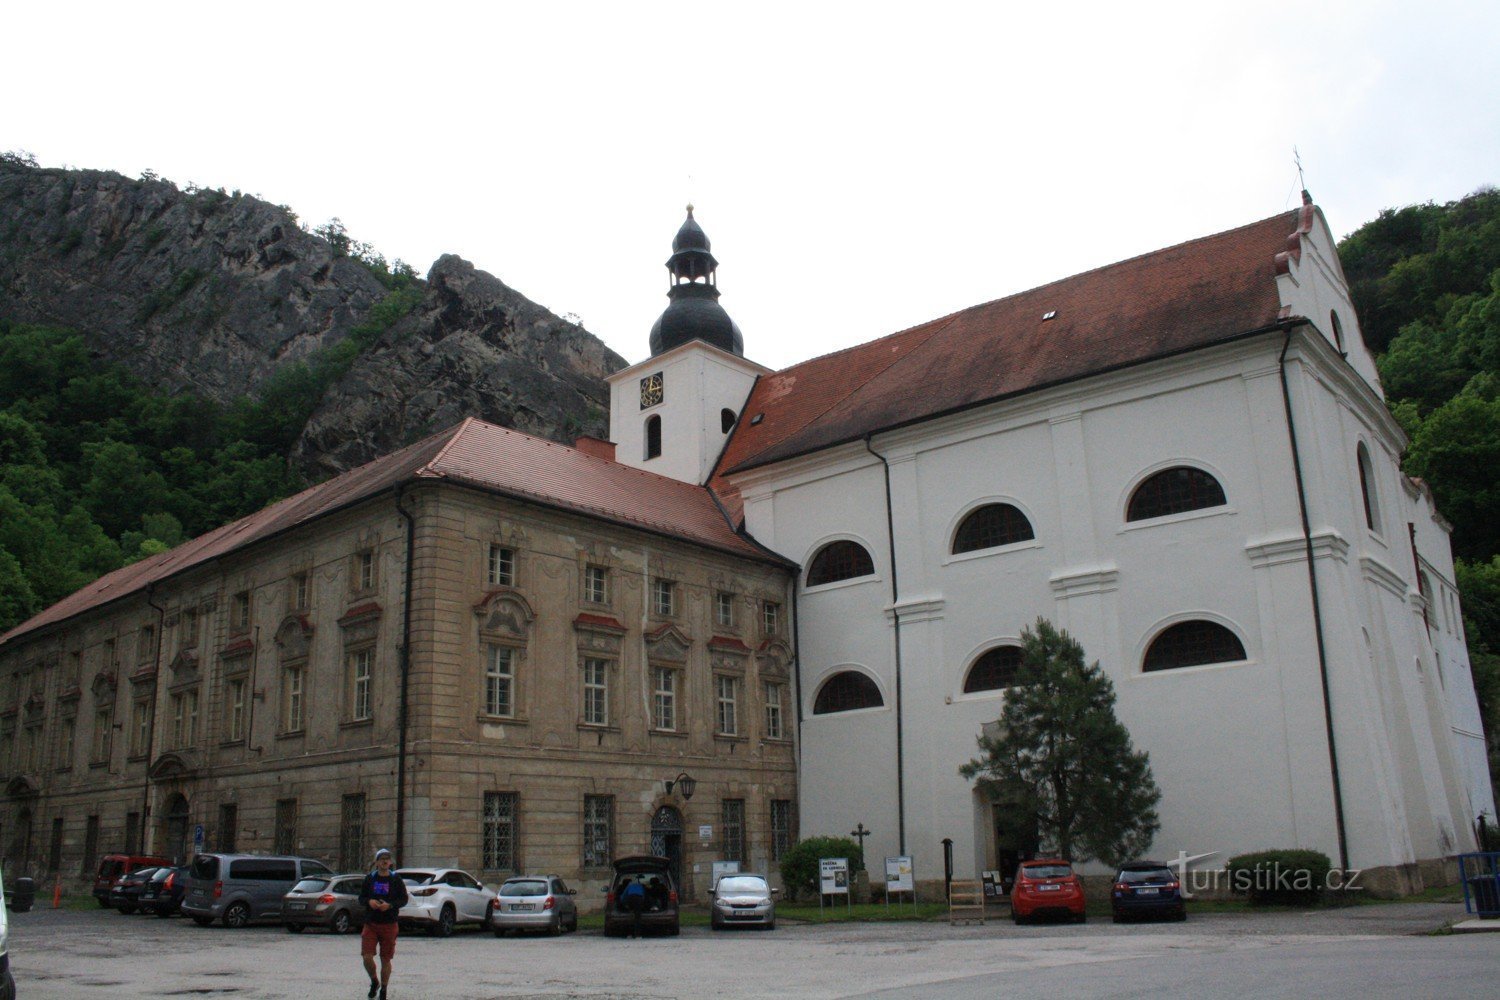 Αγ. Jan pod Skalou και η εκκλησία της Γεννήσεως του Αγ. Ιωάννη του Βαπτιστή, σπήλαιο του Αγ. Η Ιβάνα και ζει